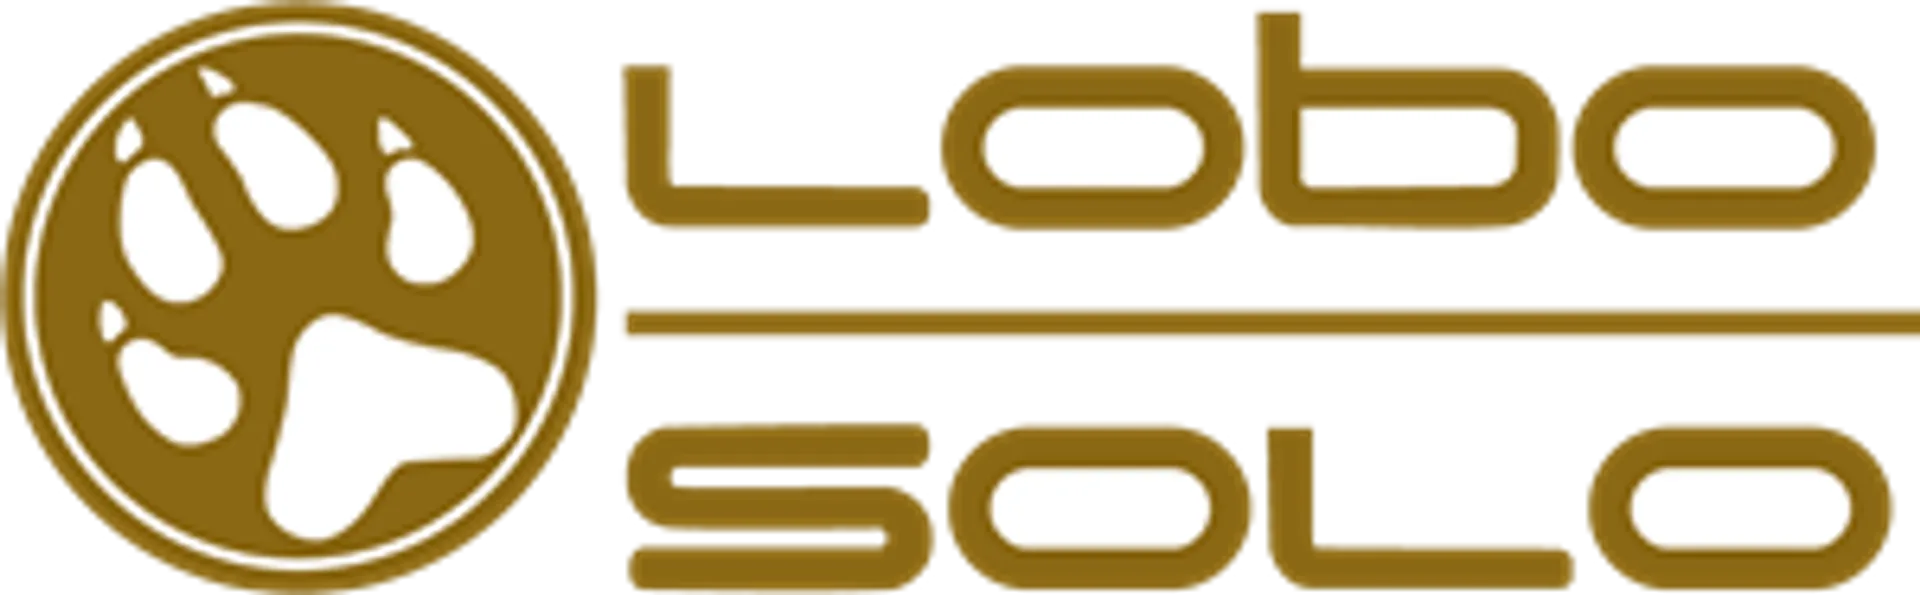 LOBO SOLO logo de catálogo